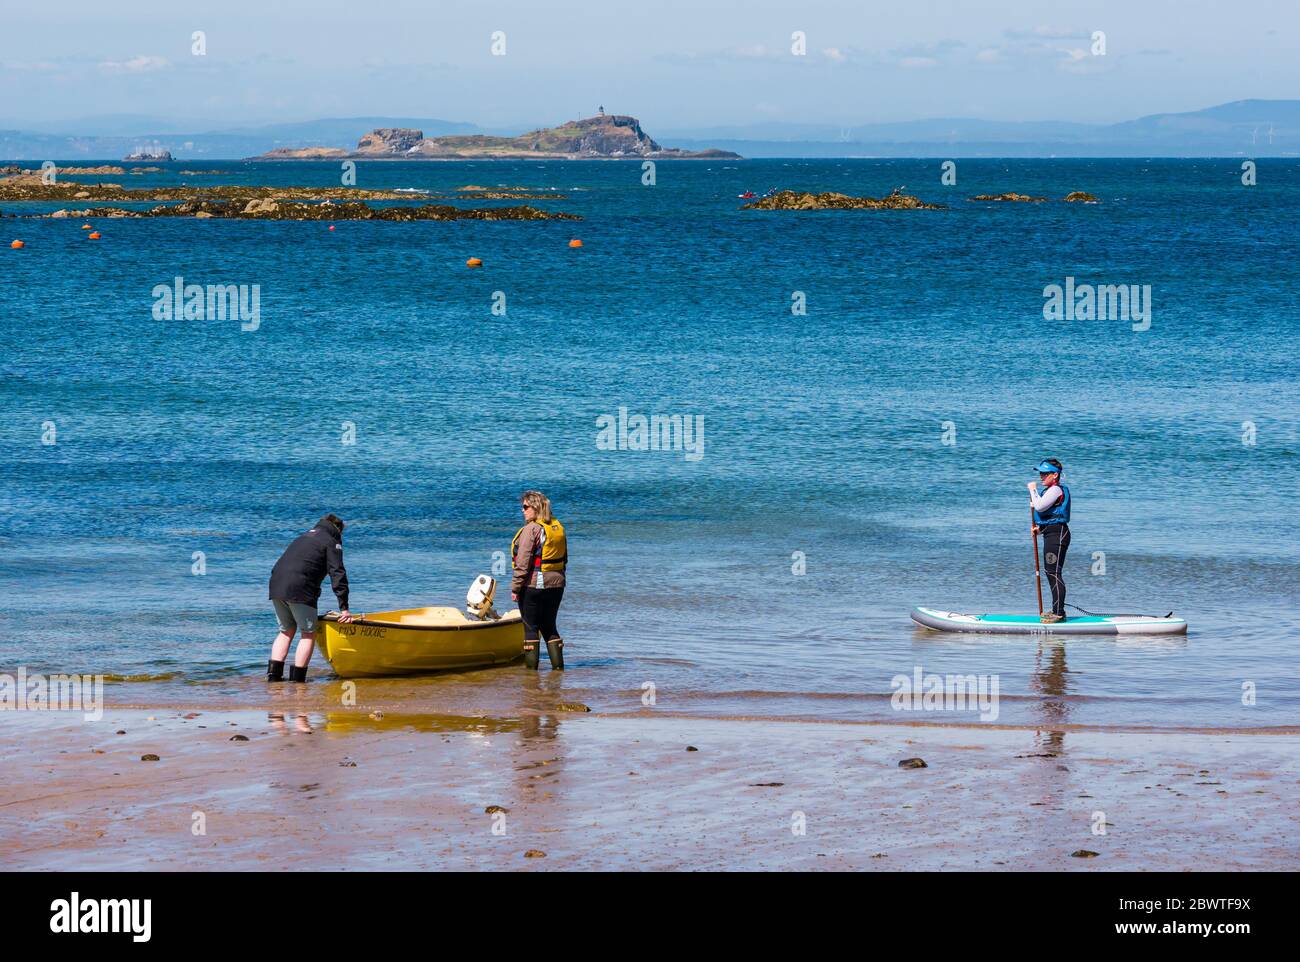 Paddelboarding für Jungen und Paar, die ein kleines Boot ins Wasser bringen, mit Blick auf Fidra Island, North Berwick, East Lothian, Schottland, Großbritannien Stockfoto